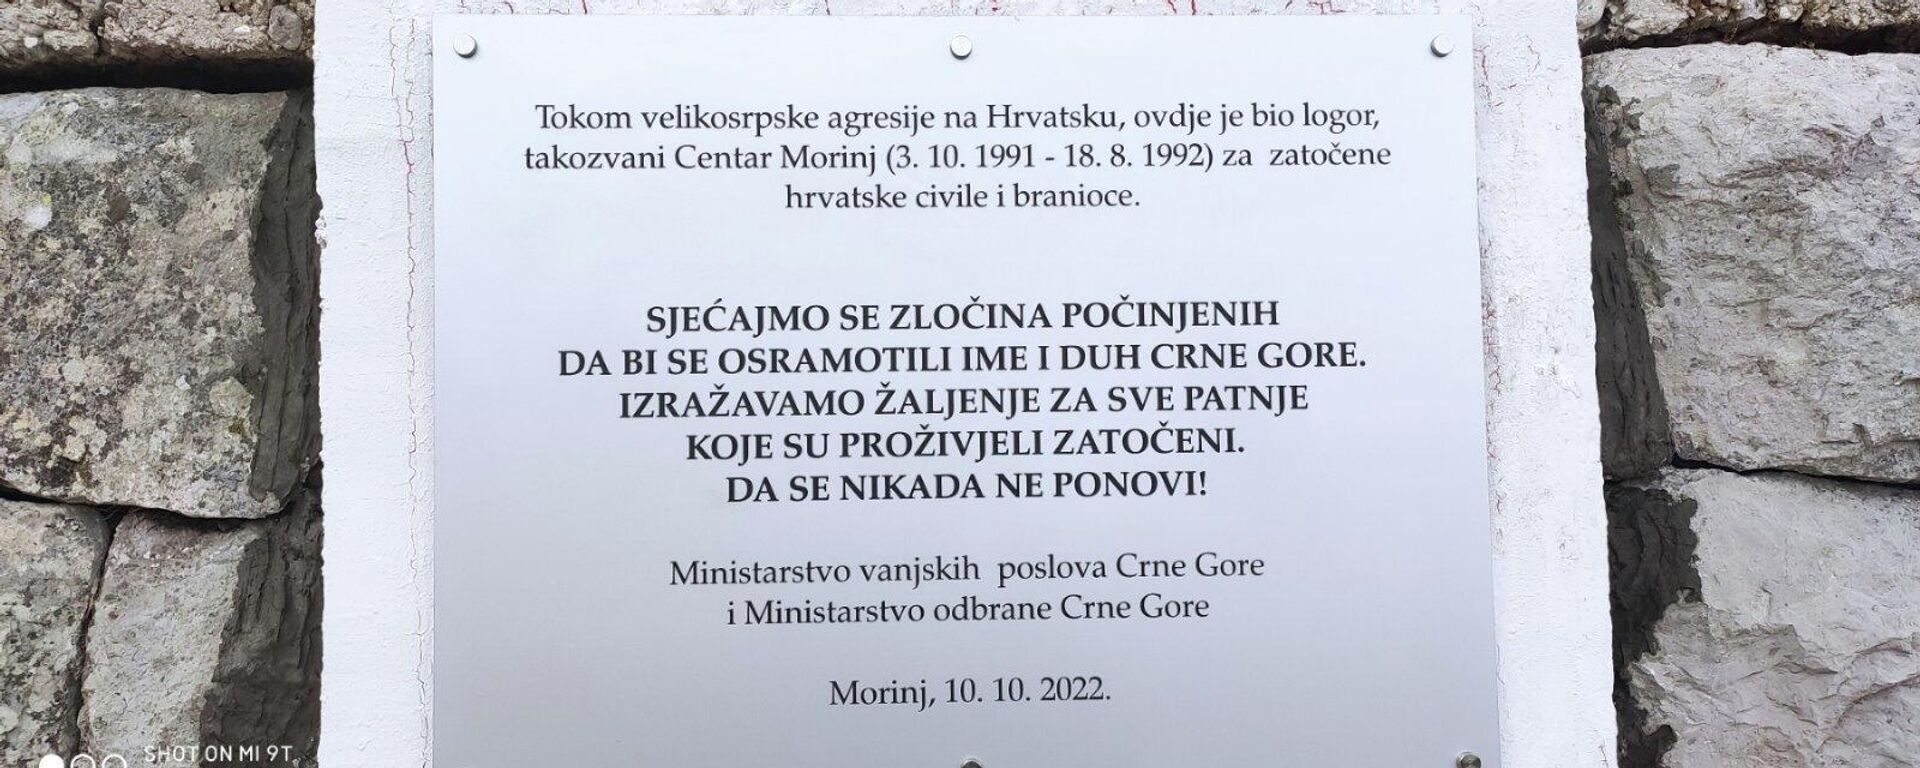 Spomen-ploča u Morinju - Sputnik Srbija, 1920, 25.10.2022